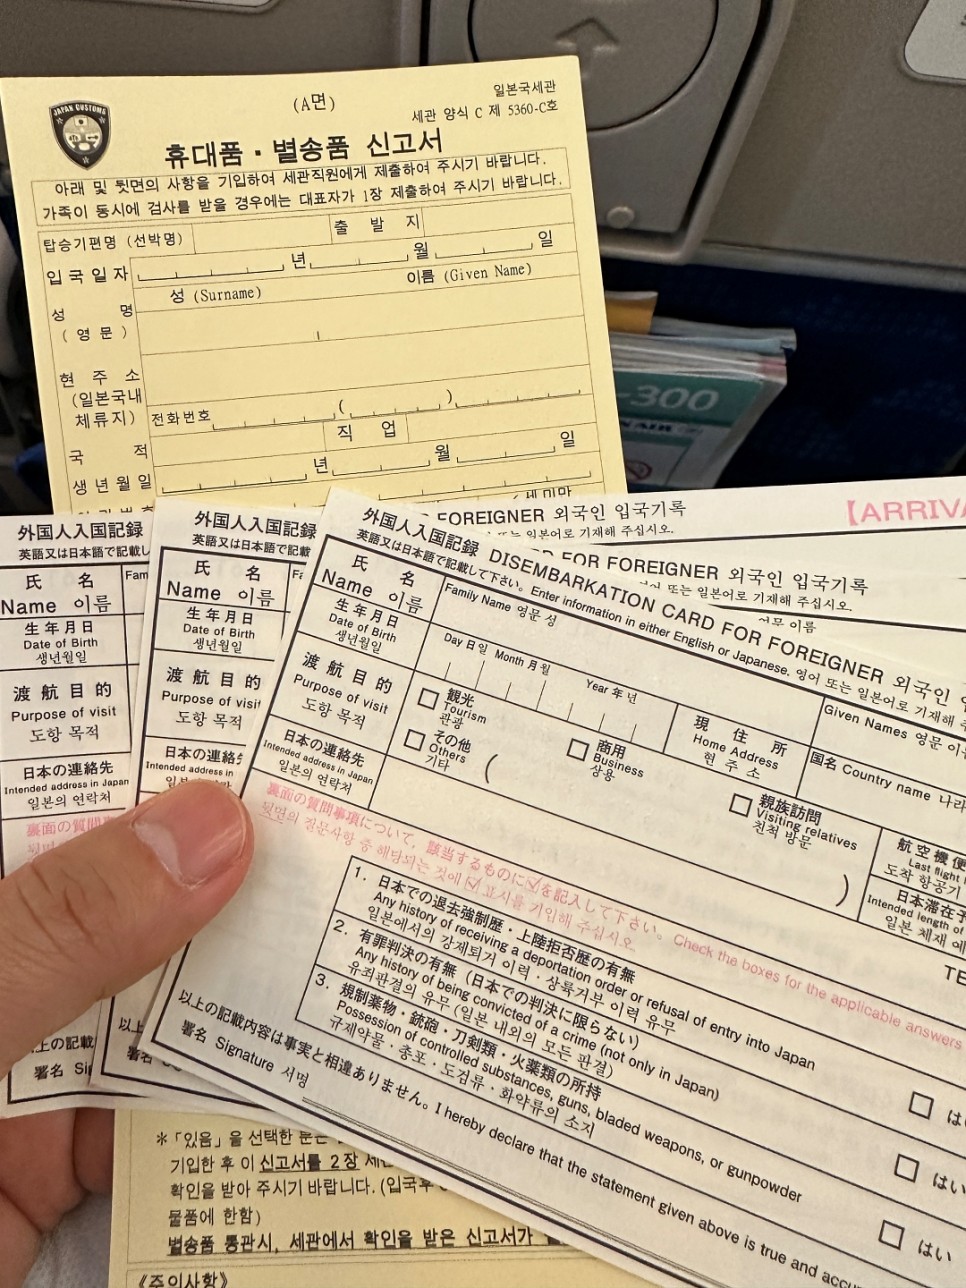 일본 입국 대한항공 도쿄행 나리타공항 피치항공 국내선 환승 일본교통카드 스이카카드 애플페이 등록